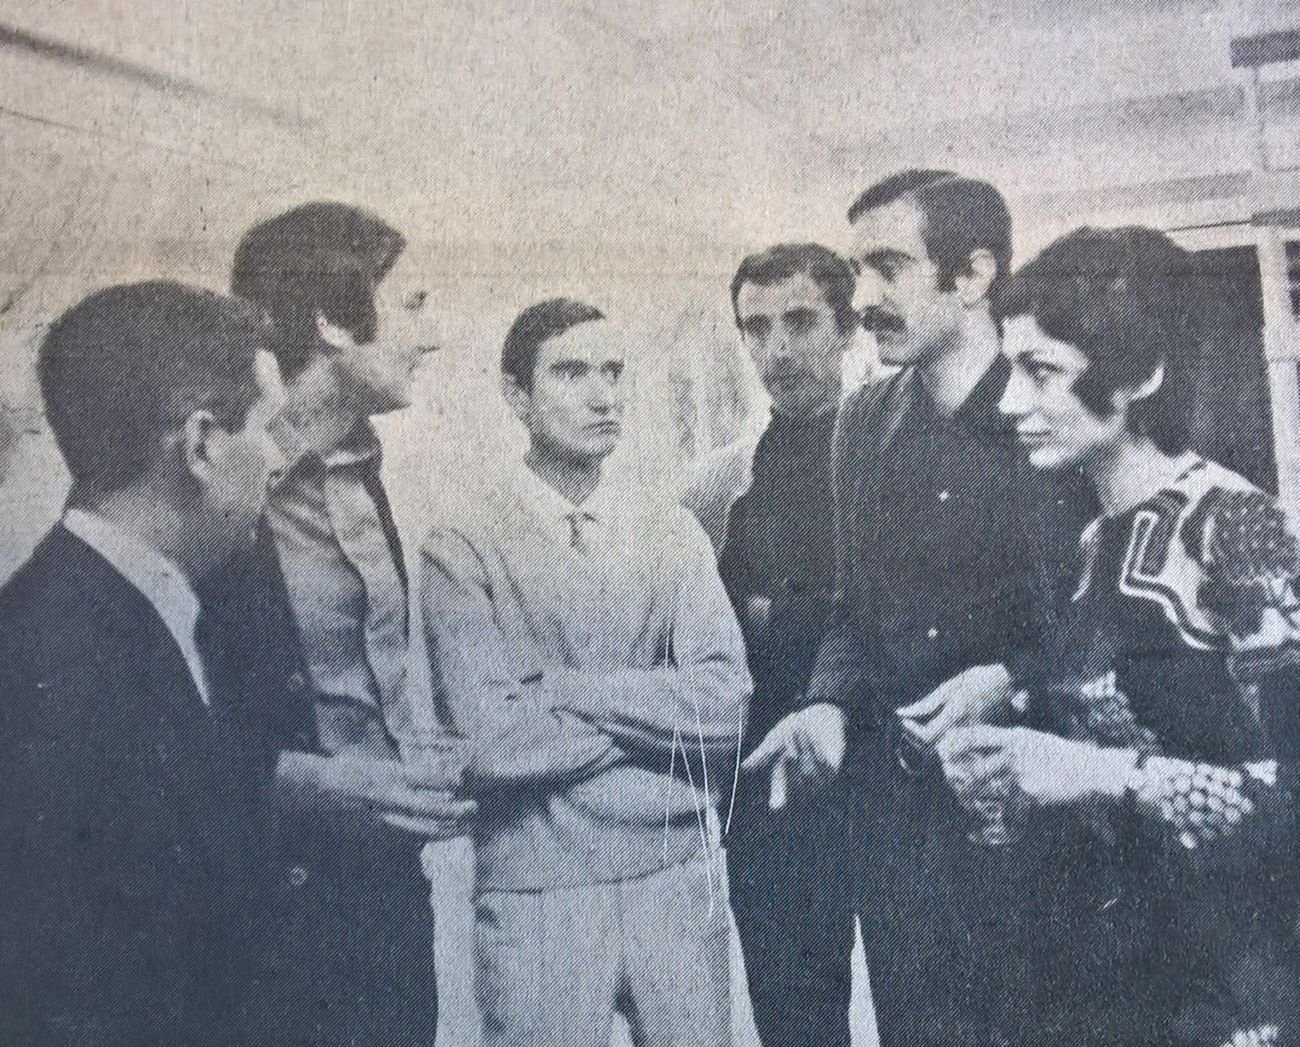 Da destra, la sig.ra Papola, il pittore Visca, il pittore Carnemolla, il giornalista Rubini, il pittore Papola e un visitatore. Gazzetta di Pescara, 10 gennaio 1971